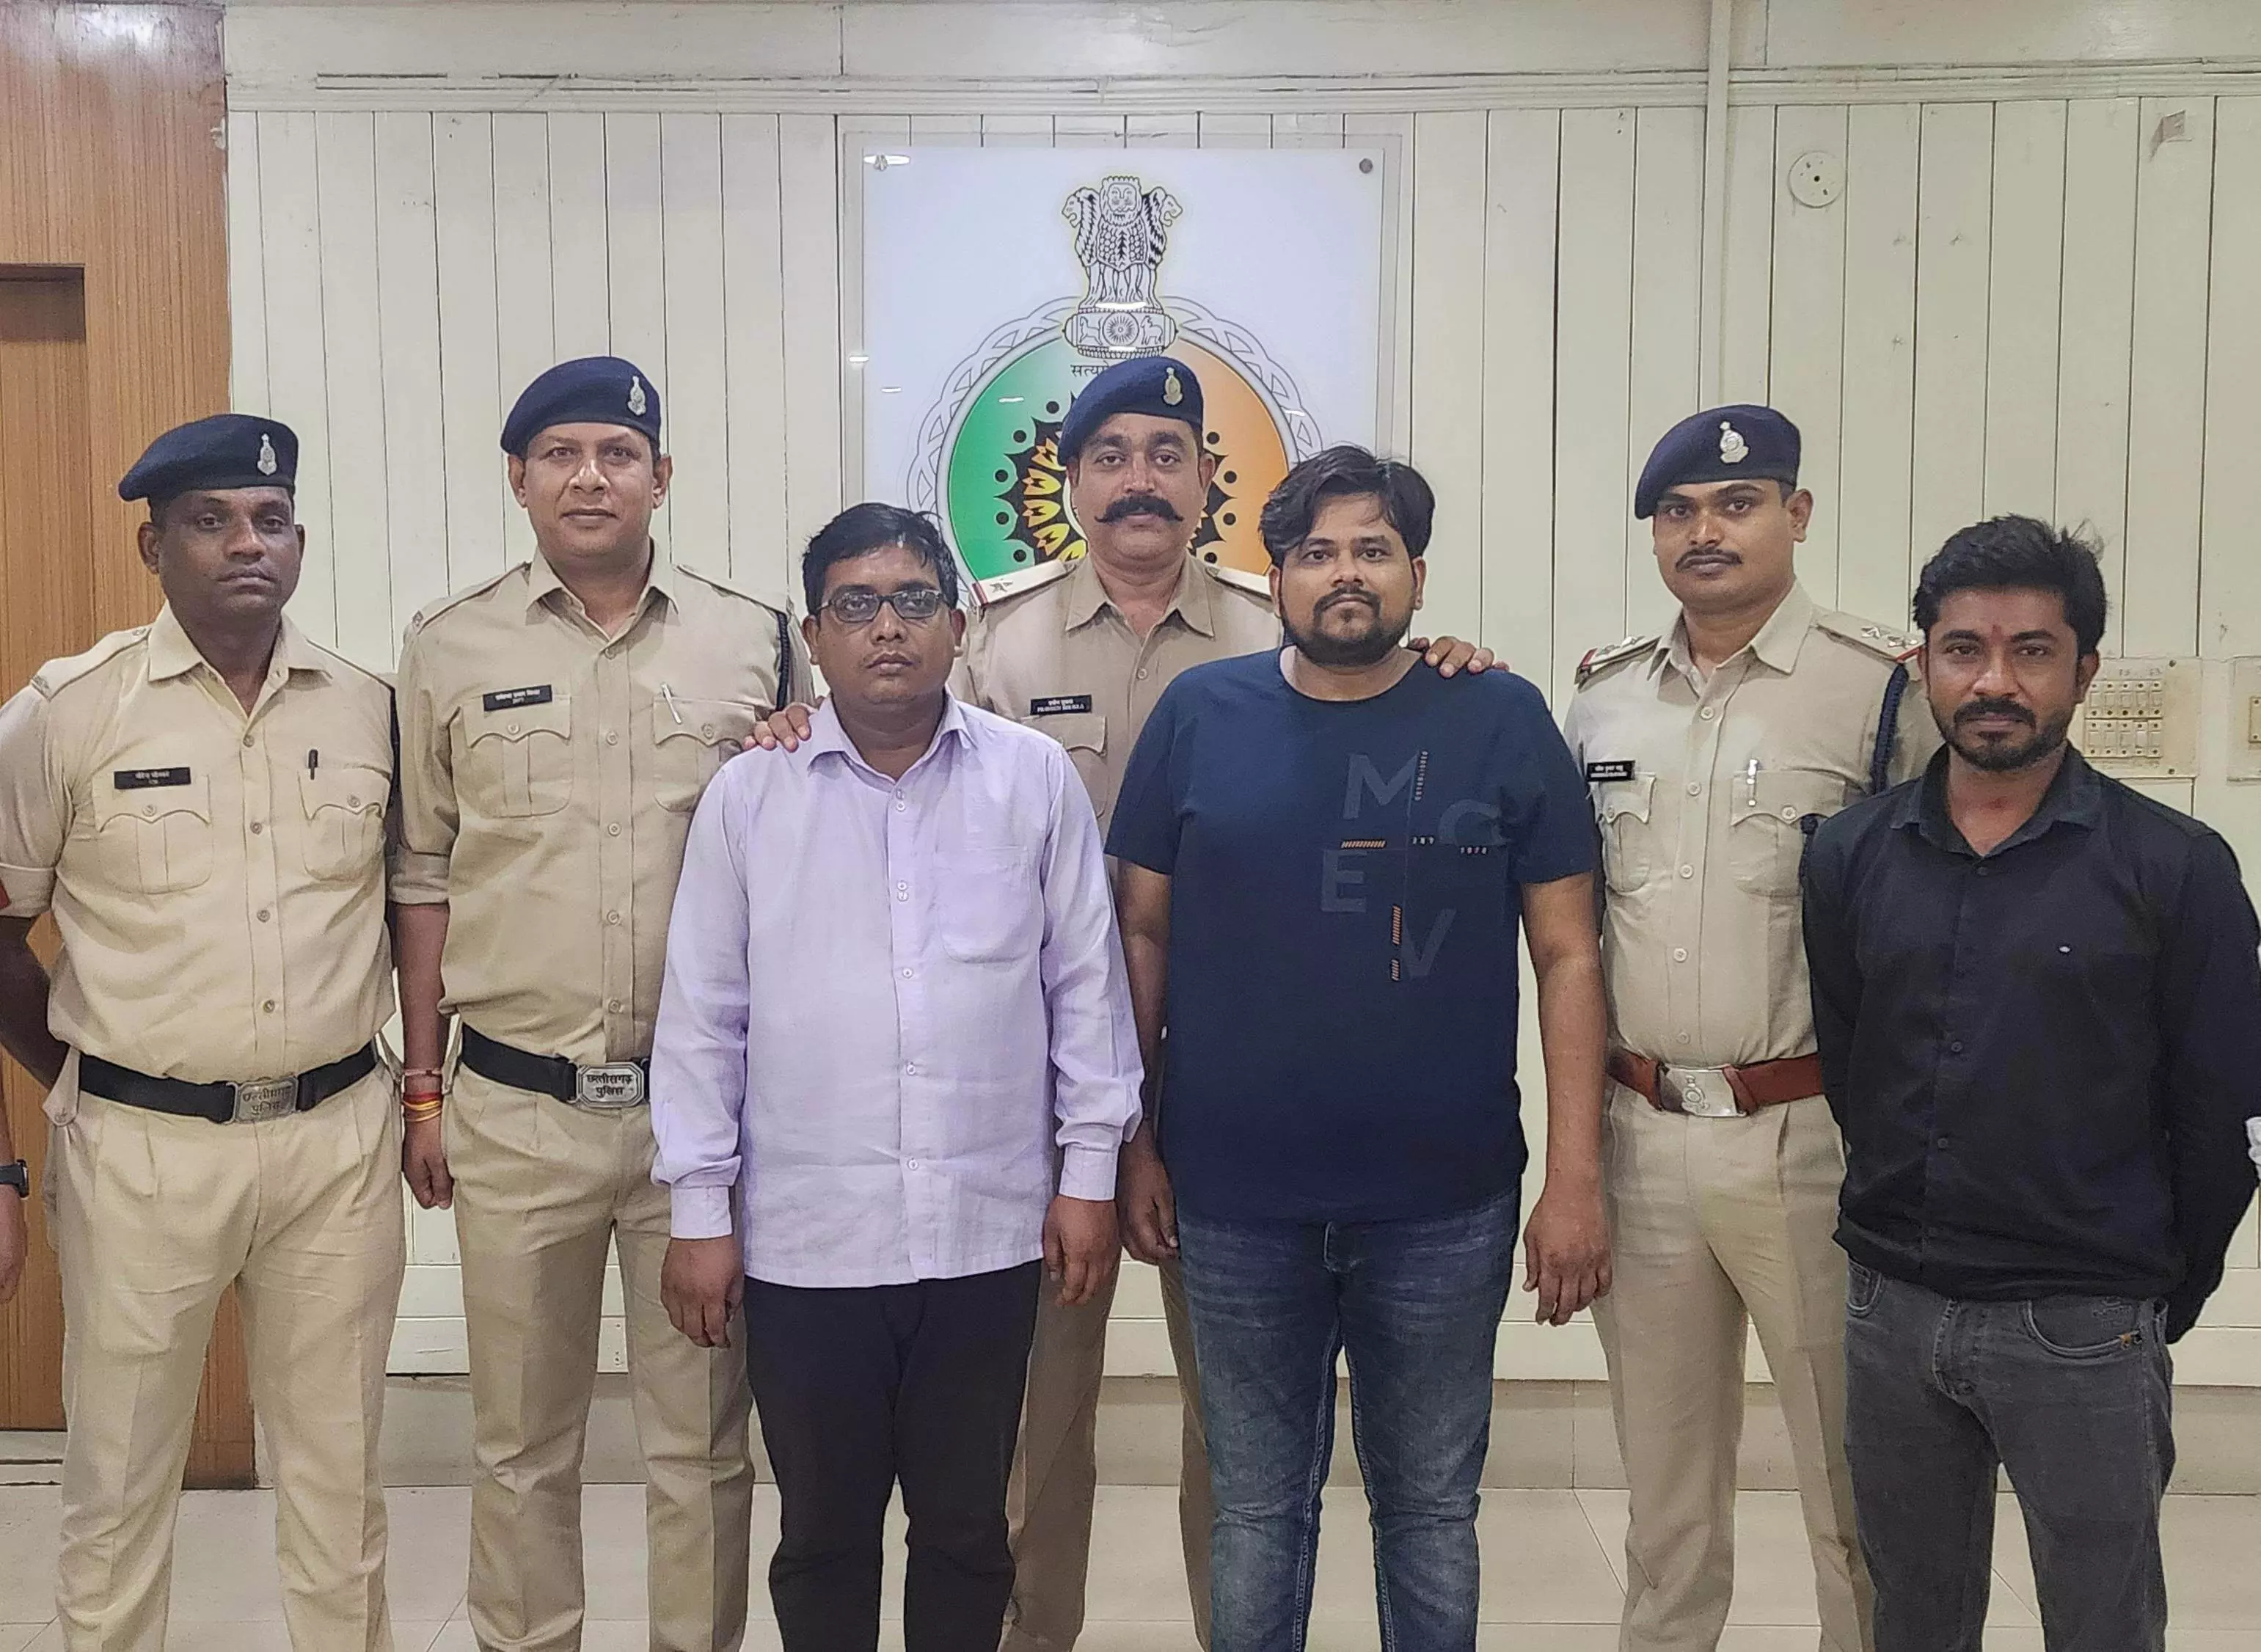 सॉफ्टवेयर इंजीनियर और बैंक अकाउंट सप्लायर गिरफ्तार, रायपुर में ठगी की वारदात को दिए थे अंजाम